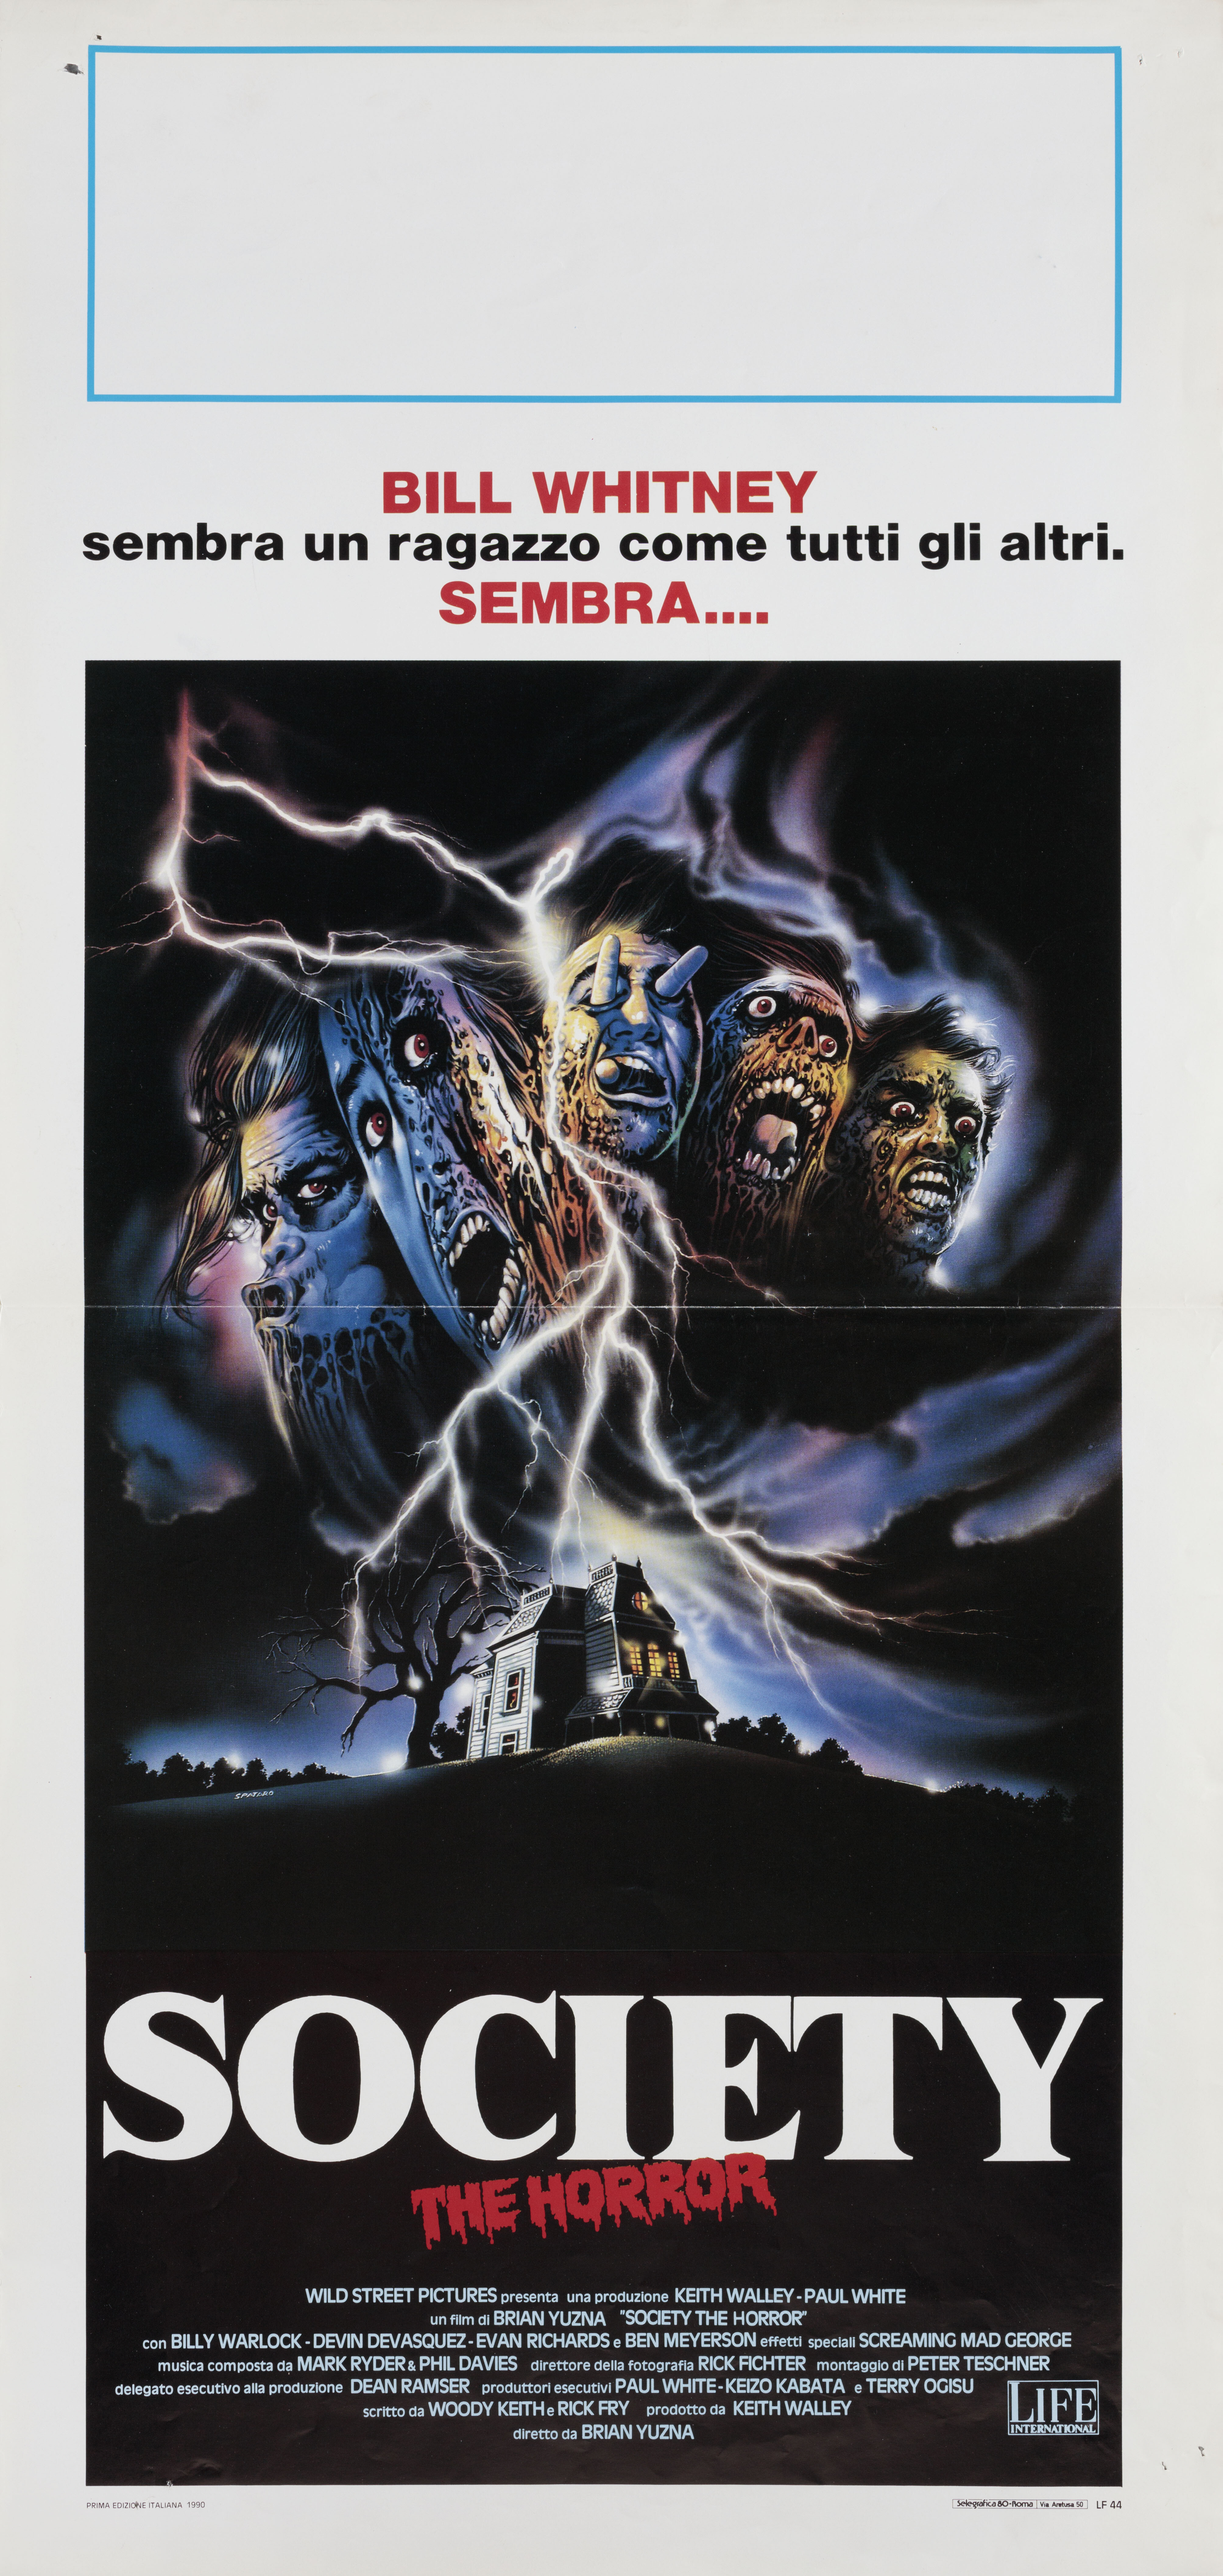 Общество (Society, 1989), режиссёр Брайан Юзна, итальянский постер к фильму, автор Спатаро (ужасы, 1989 год)